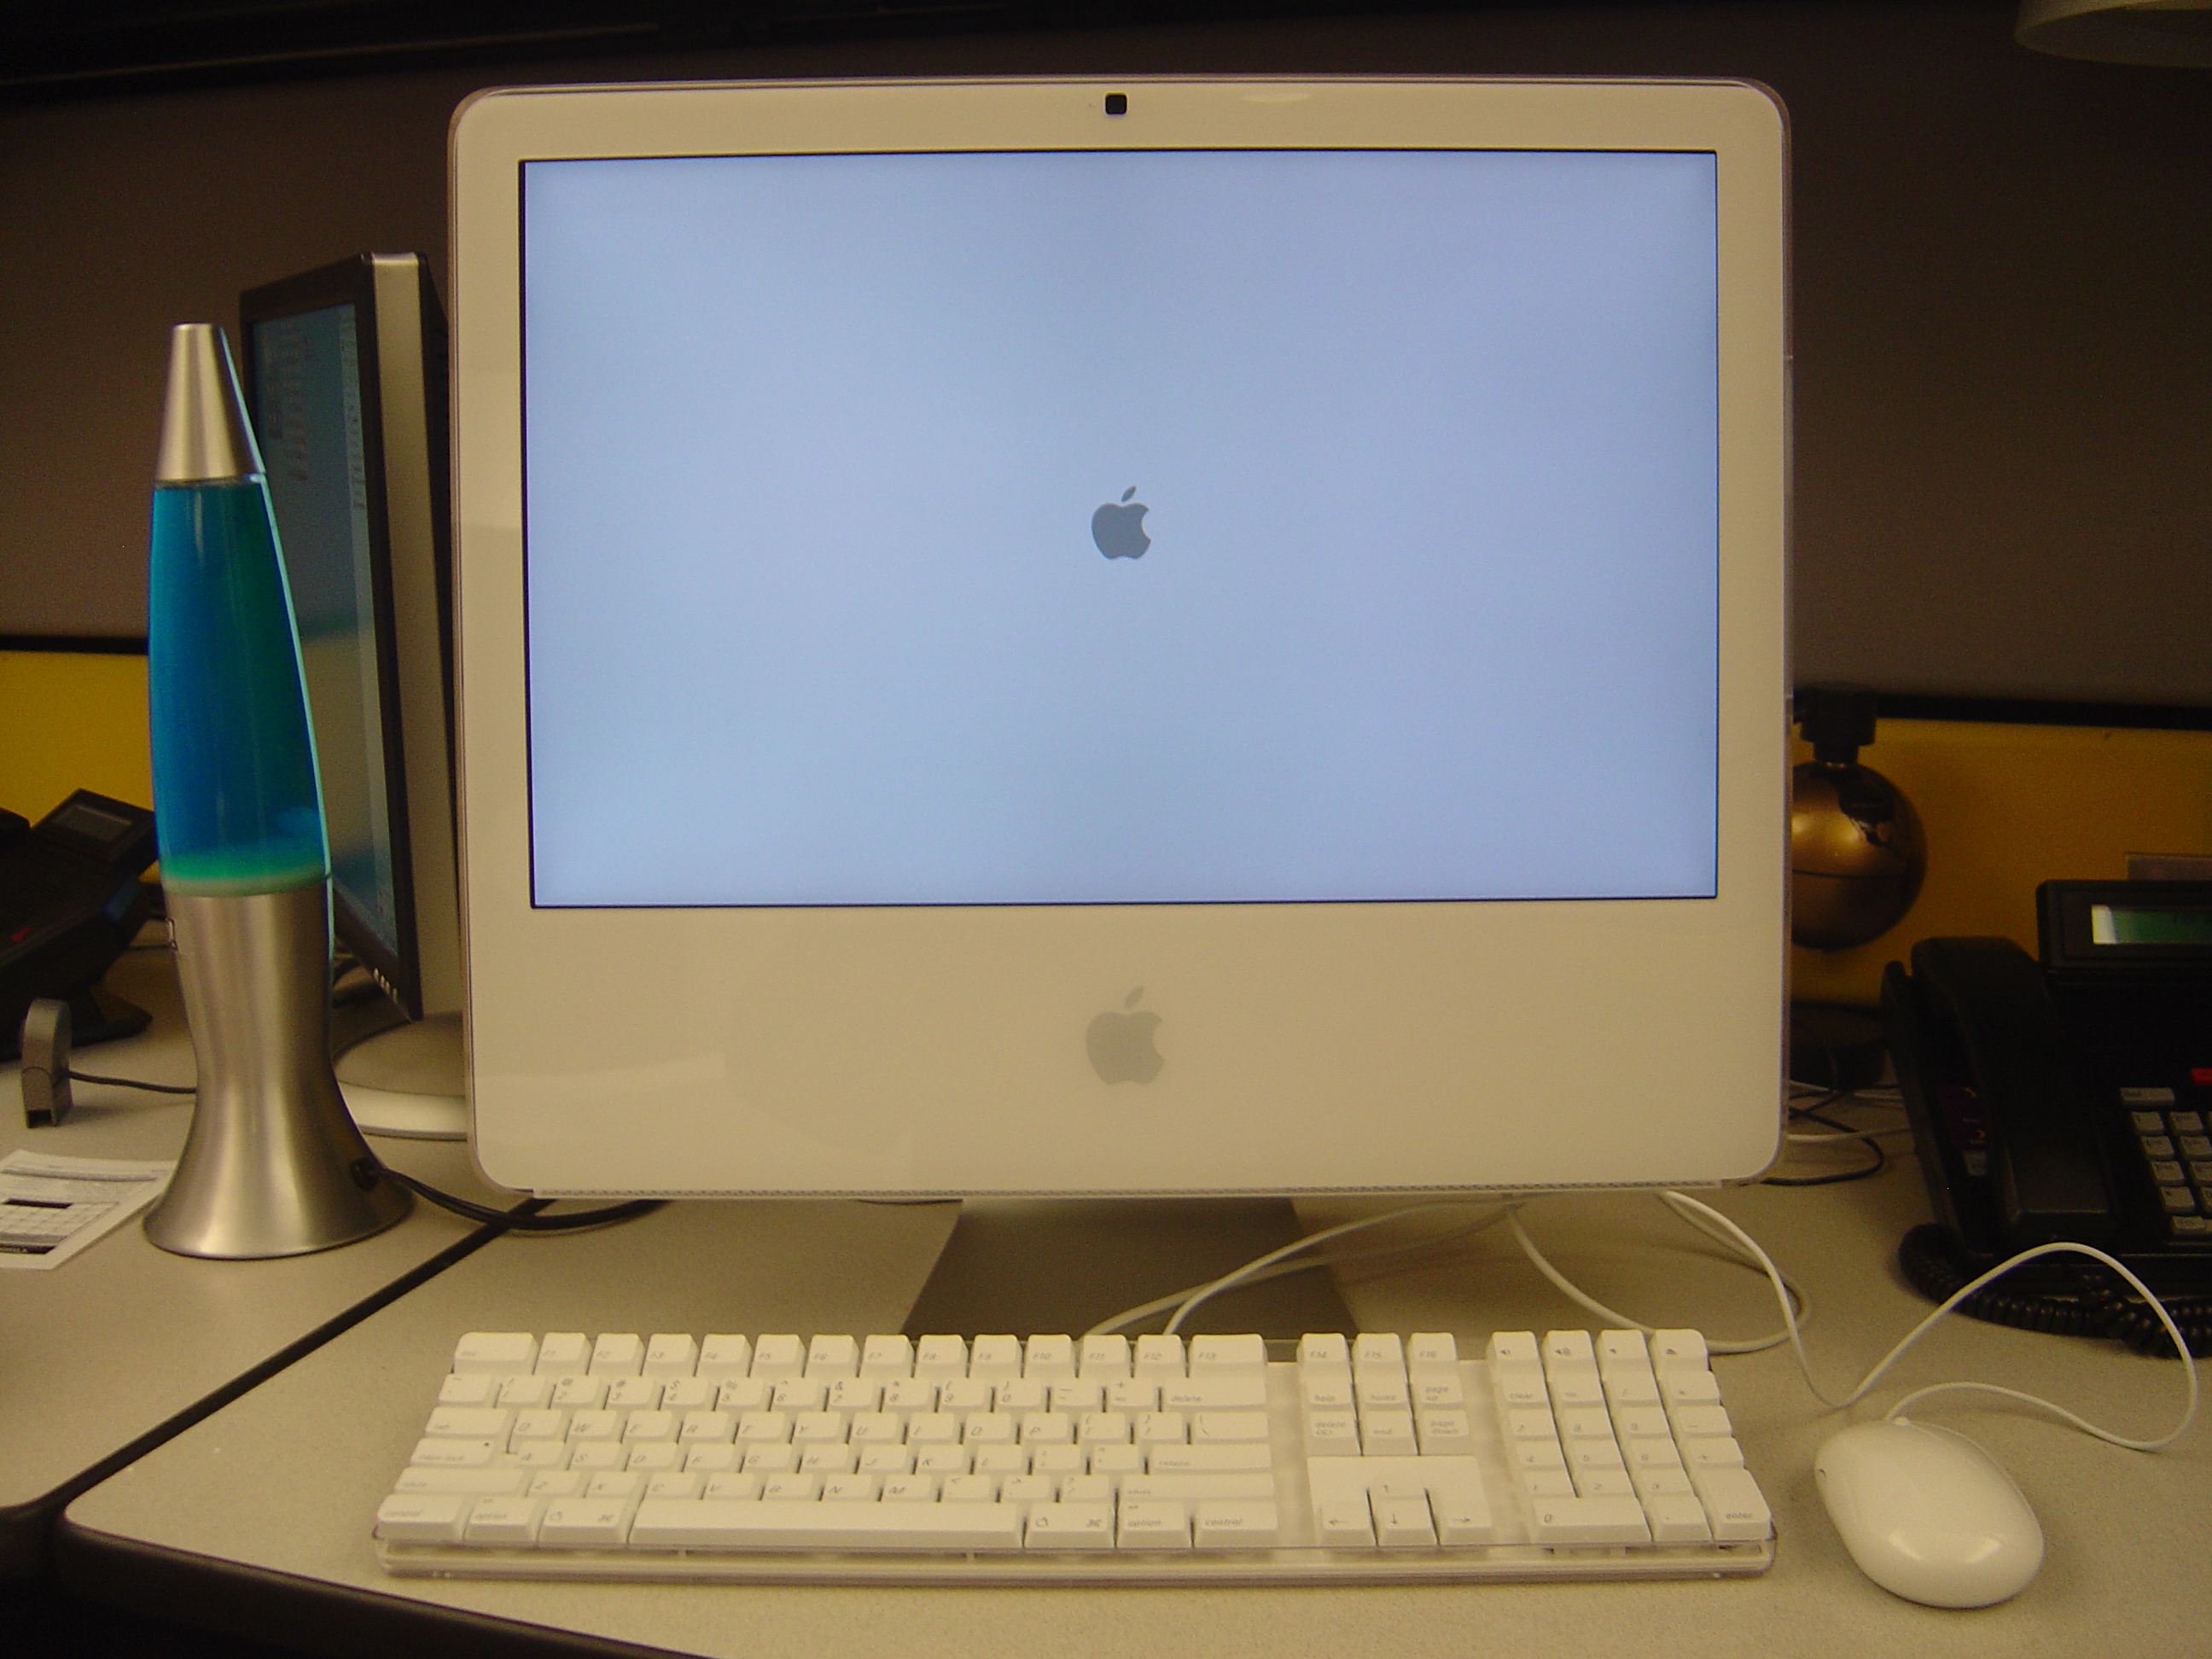 Velika tranzicija dogodila se 2006. godine, kada je Apple predstavio iMac Core Duo, koji je bio prvo računalo koje je koristilo Intelove procesore umjesto Appleovih vlastitih Power PC procesora. Tranzicija na novu platformu je bila iznimno uspješna, bez problema za korisnike, koji su od te tranzicije profitirali boljim performansama.